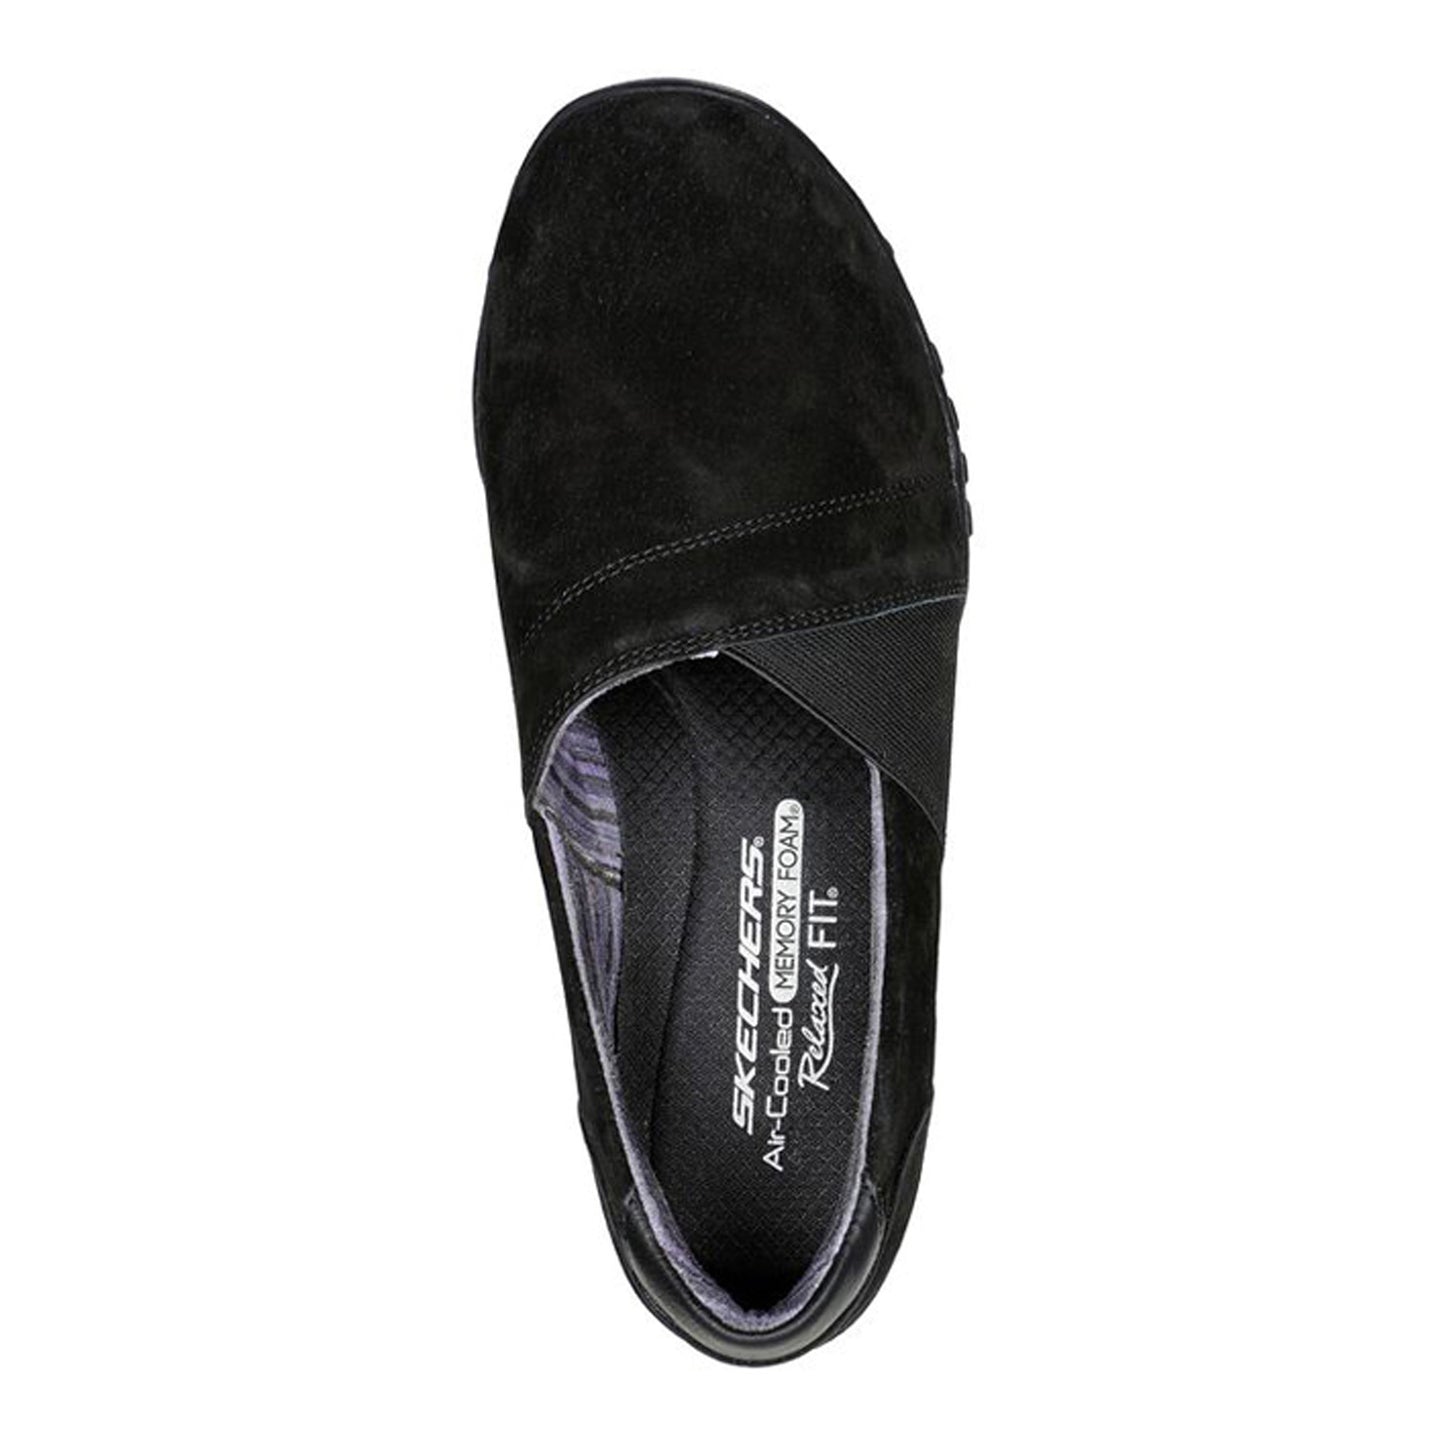 Peltz Shoes  Women's Skechers Relaxed Fit: Breathe-Easy - Kindred Slip-On - Wide Width Black/Black 100377W-BBK